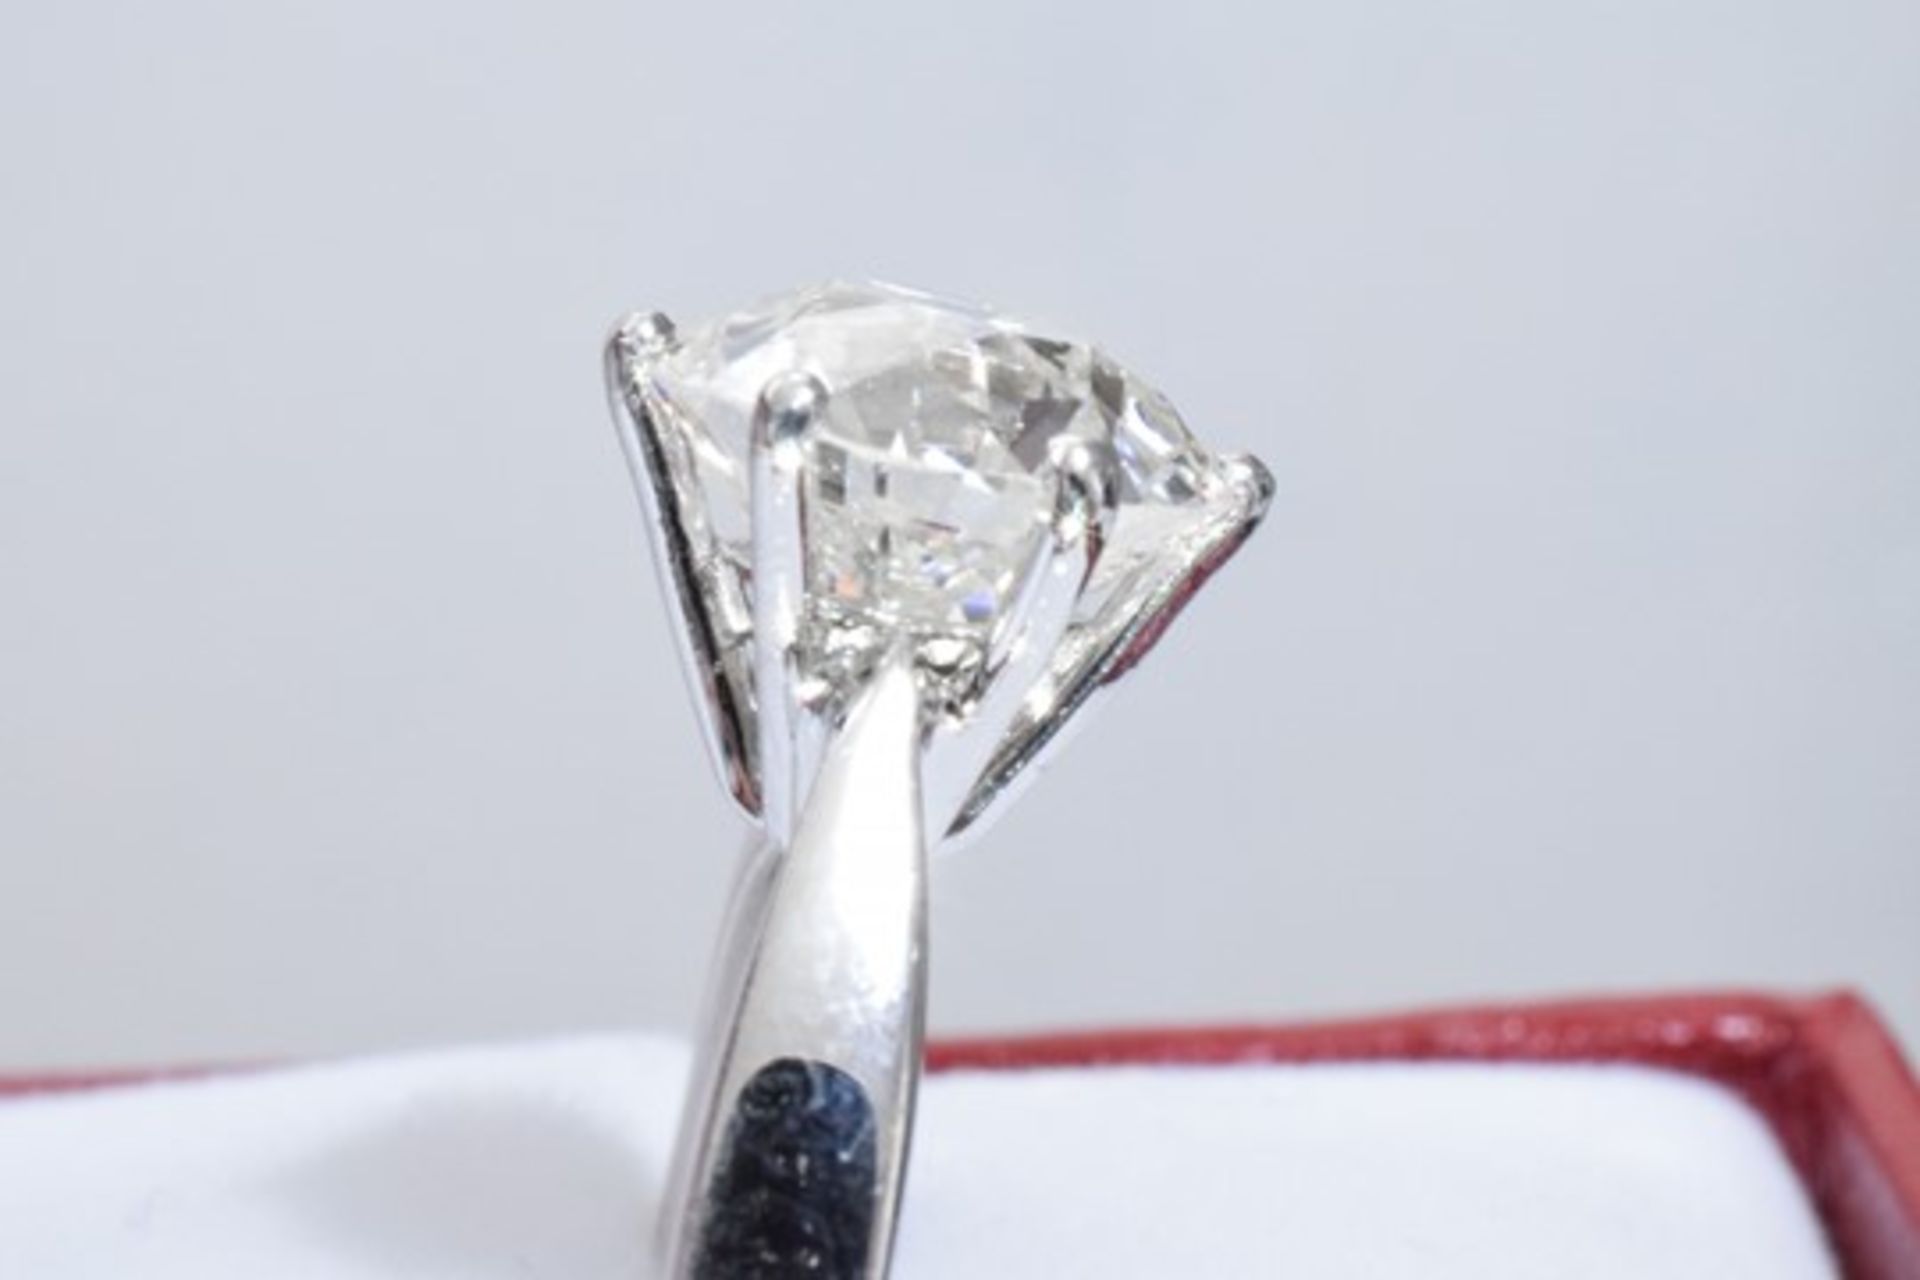 3.70 Carat Diamond Ring Set in White Gold - Image 8 of 8